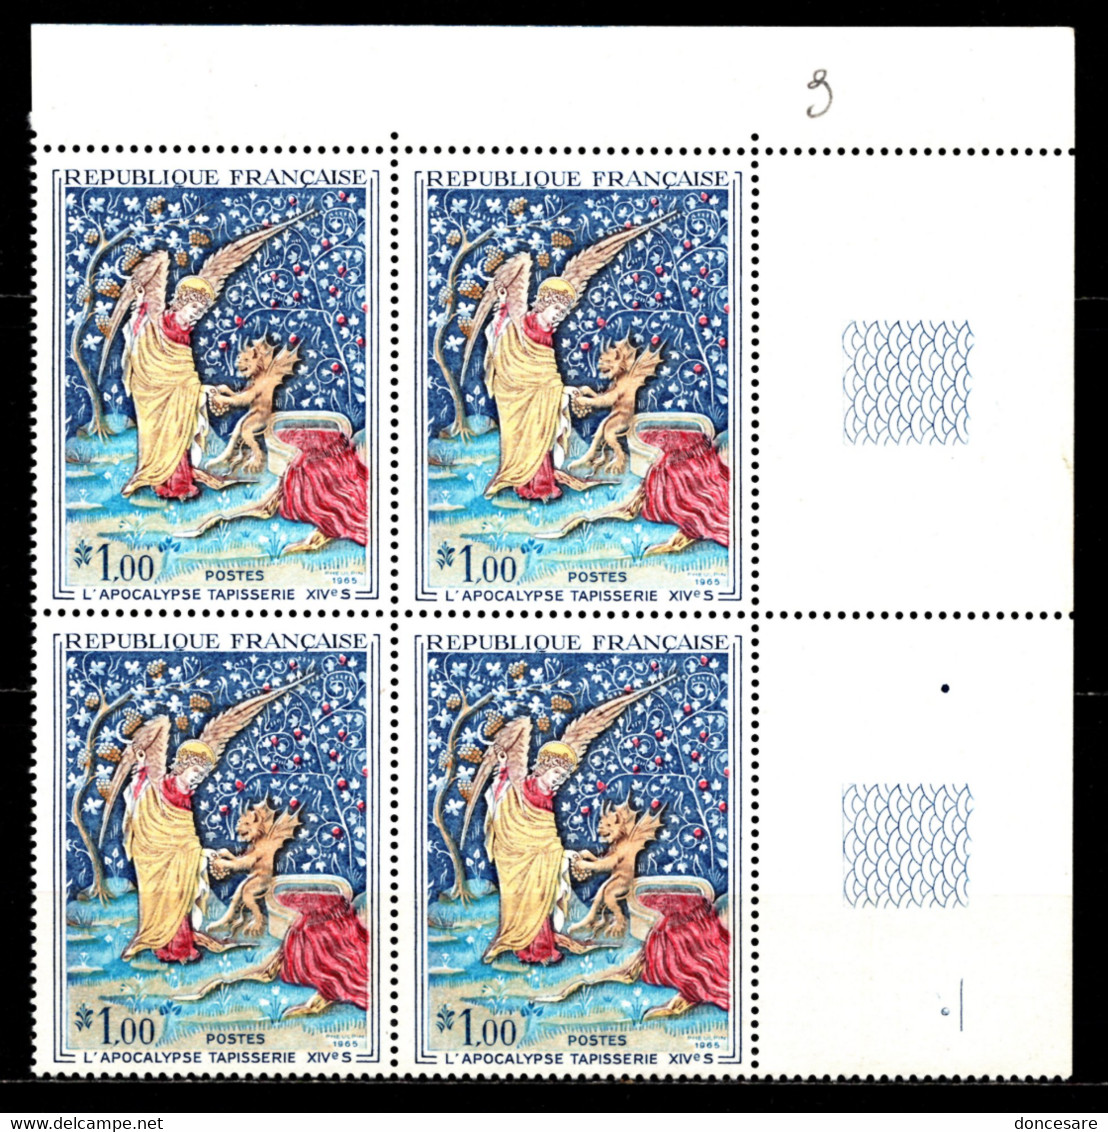 FRANCE 1965 - BLOC DE 4 TP COIN DE FEUILLE / Y.T. N° 1458  - NEUFS** - Unused Stamps